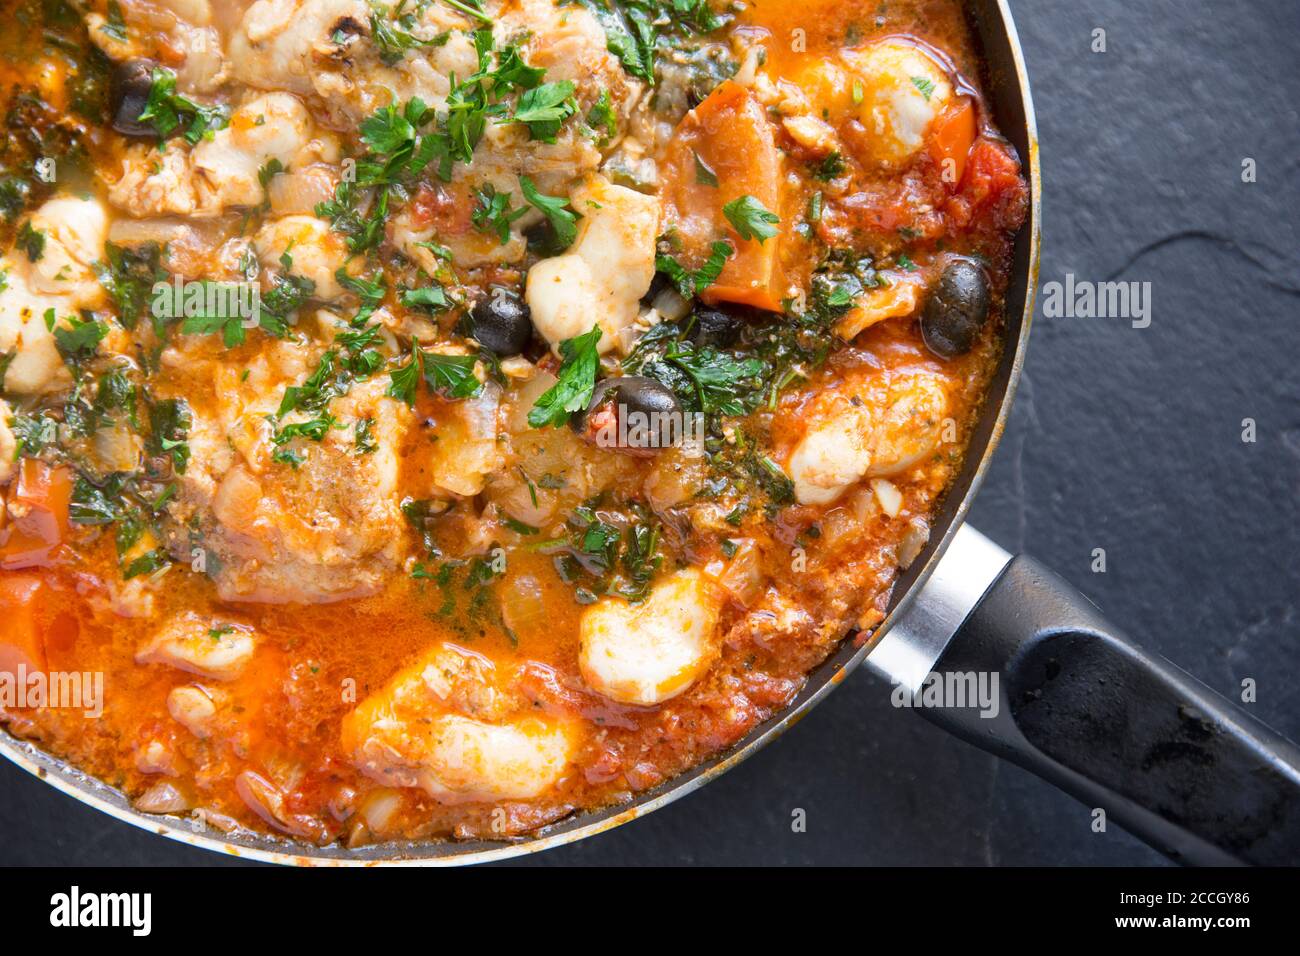 Un ragoût de poisson fait maison avec des joues de monkfish et des joues de rayon cuites dans une sauce tomate avec des pommes de terre bouillies, des olives noires et garnies de Banque D'Images